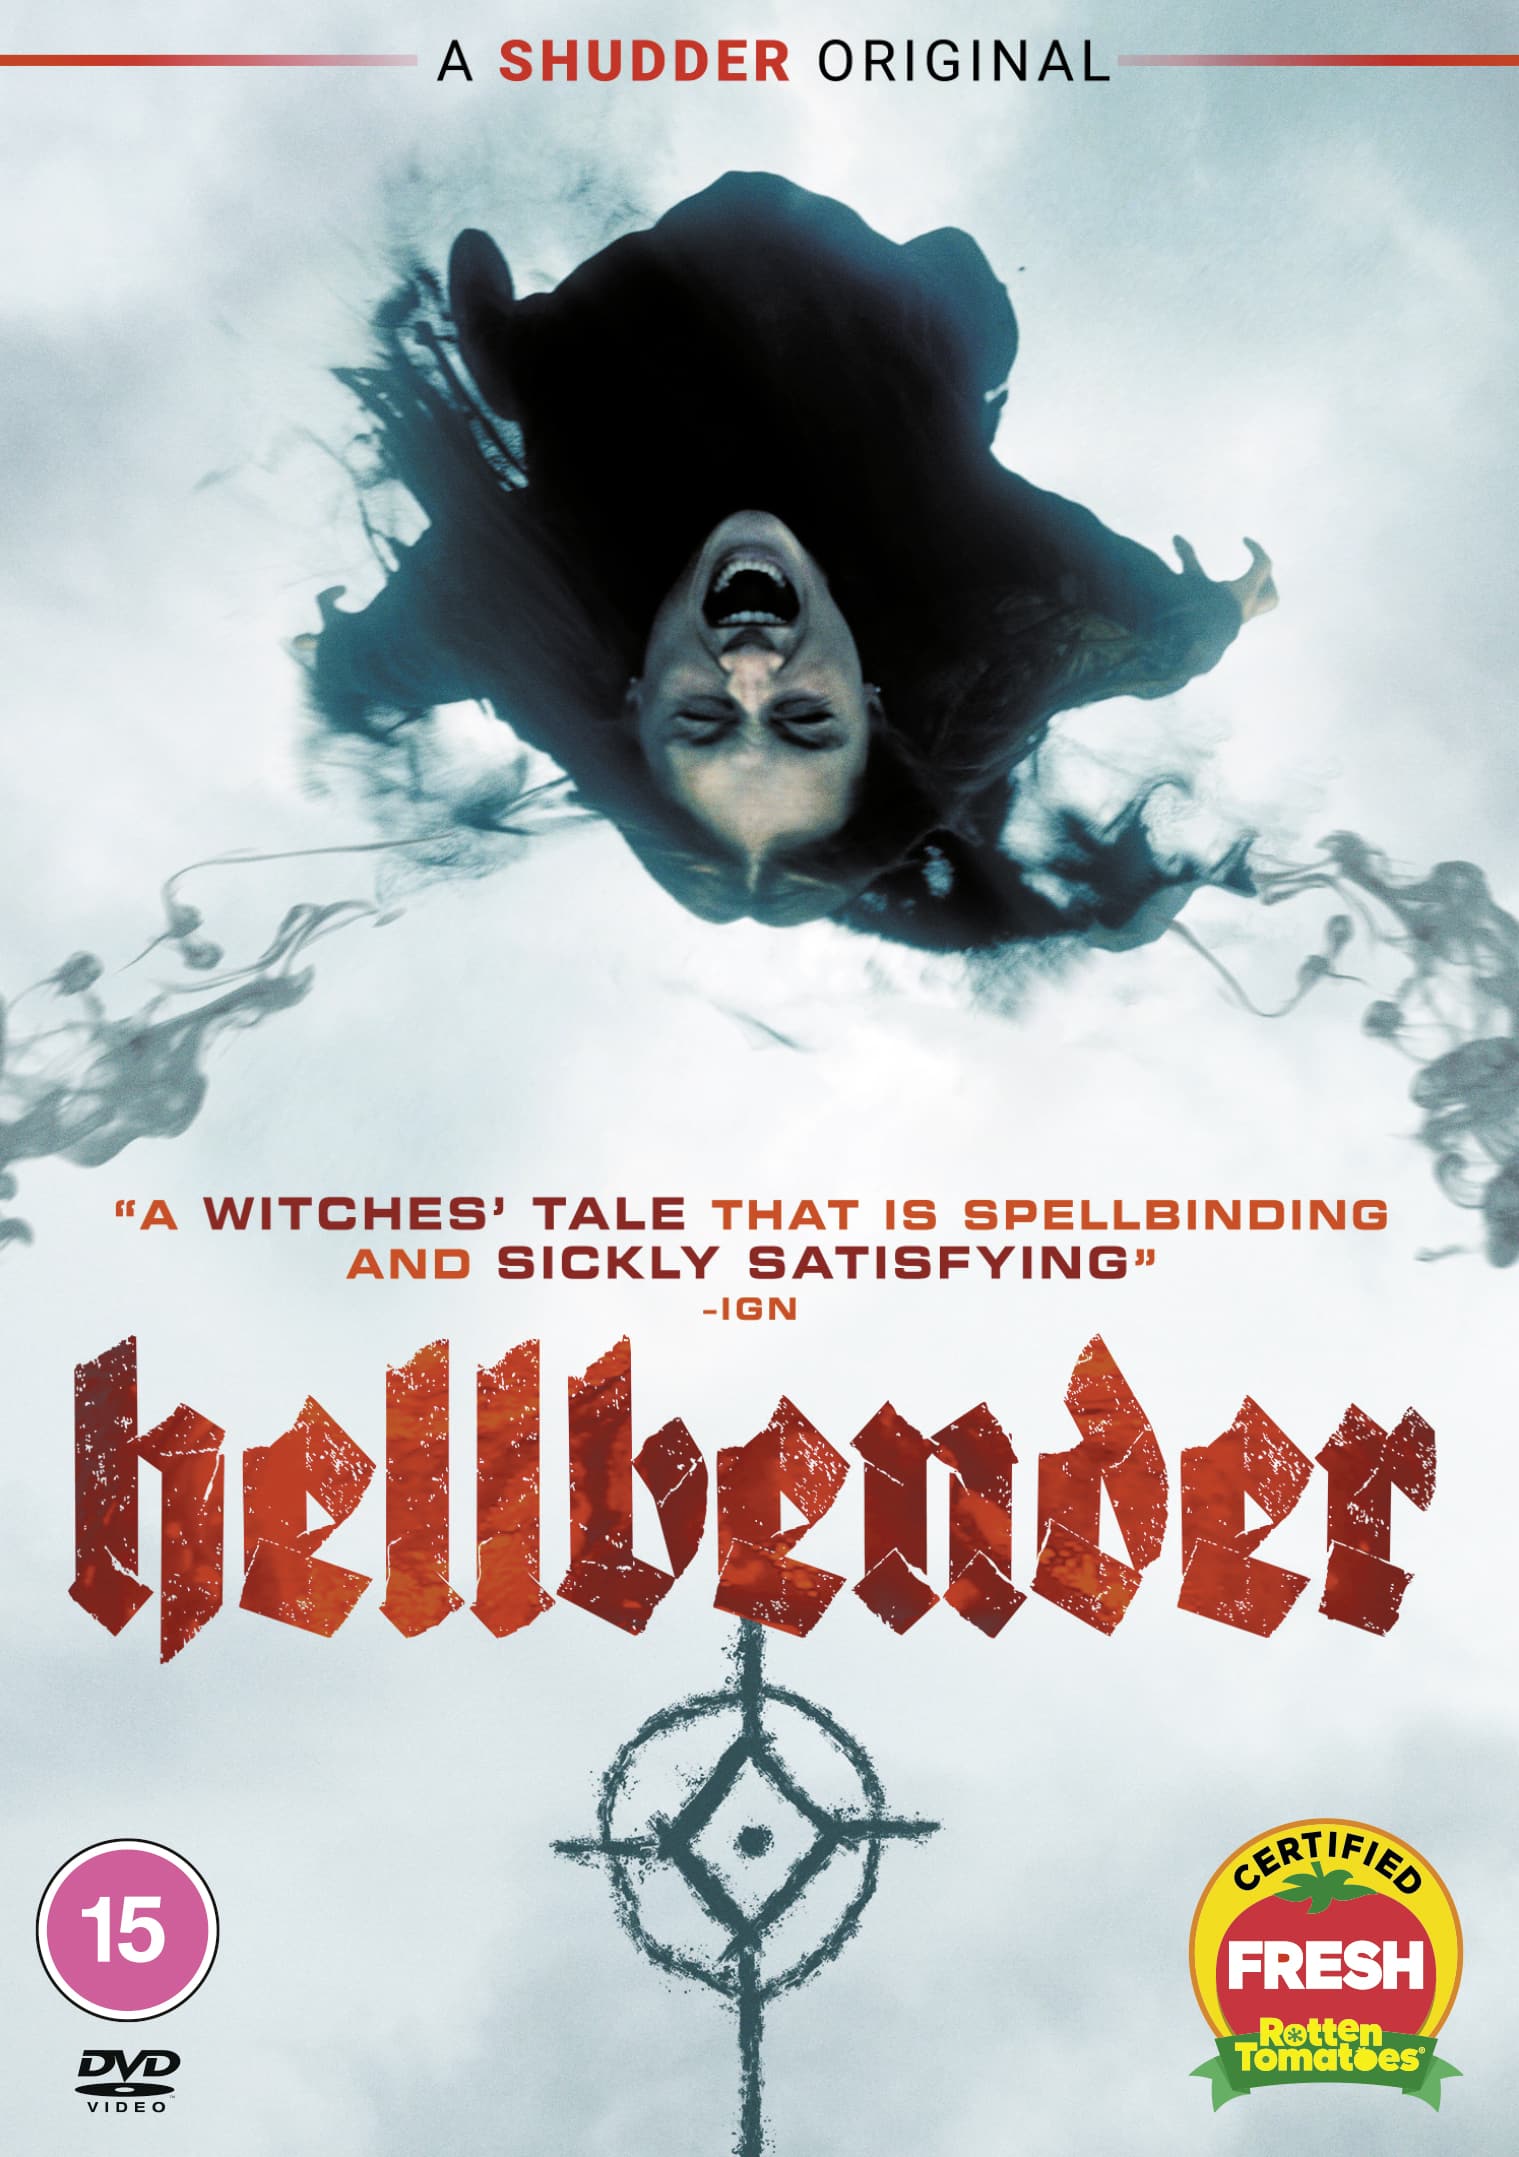 Gagnez l'original de Shudder "Hellbender" en DVD 3